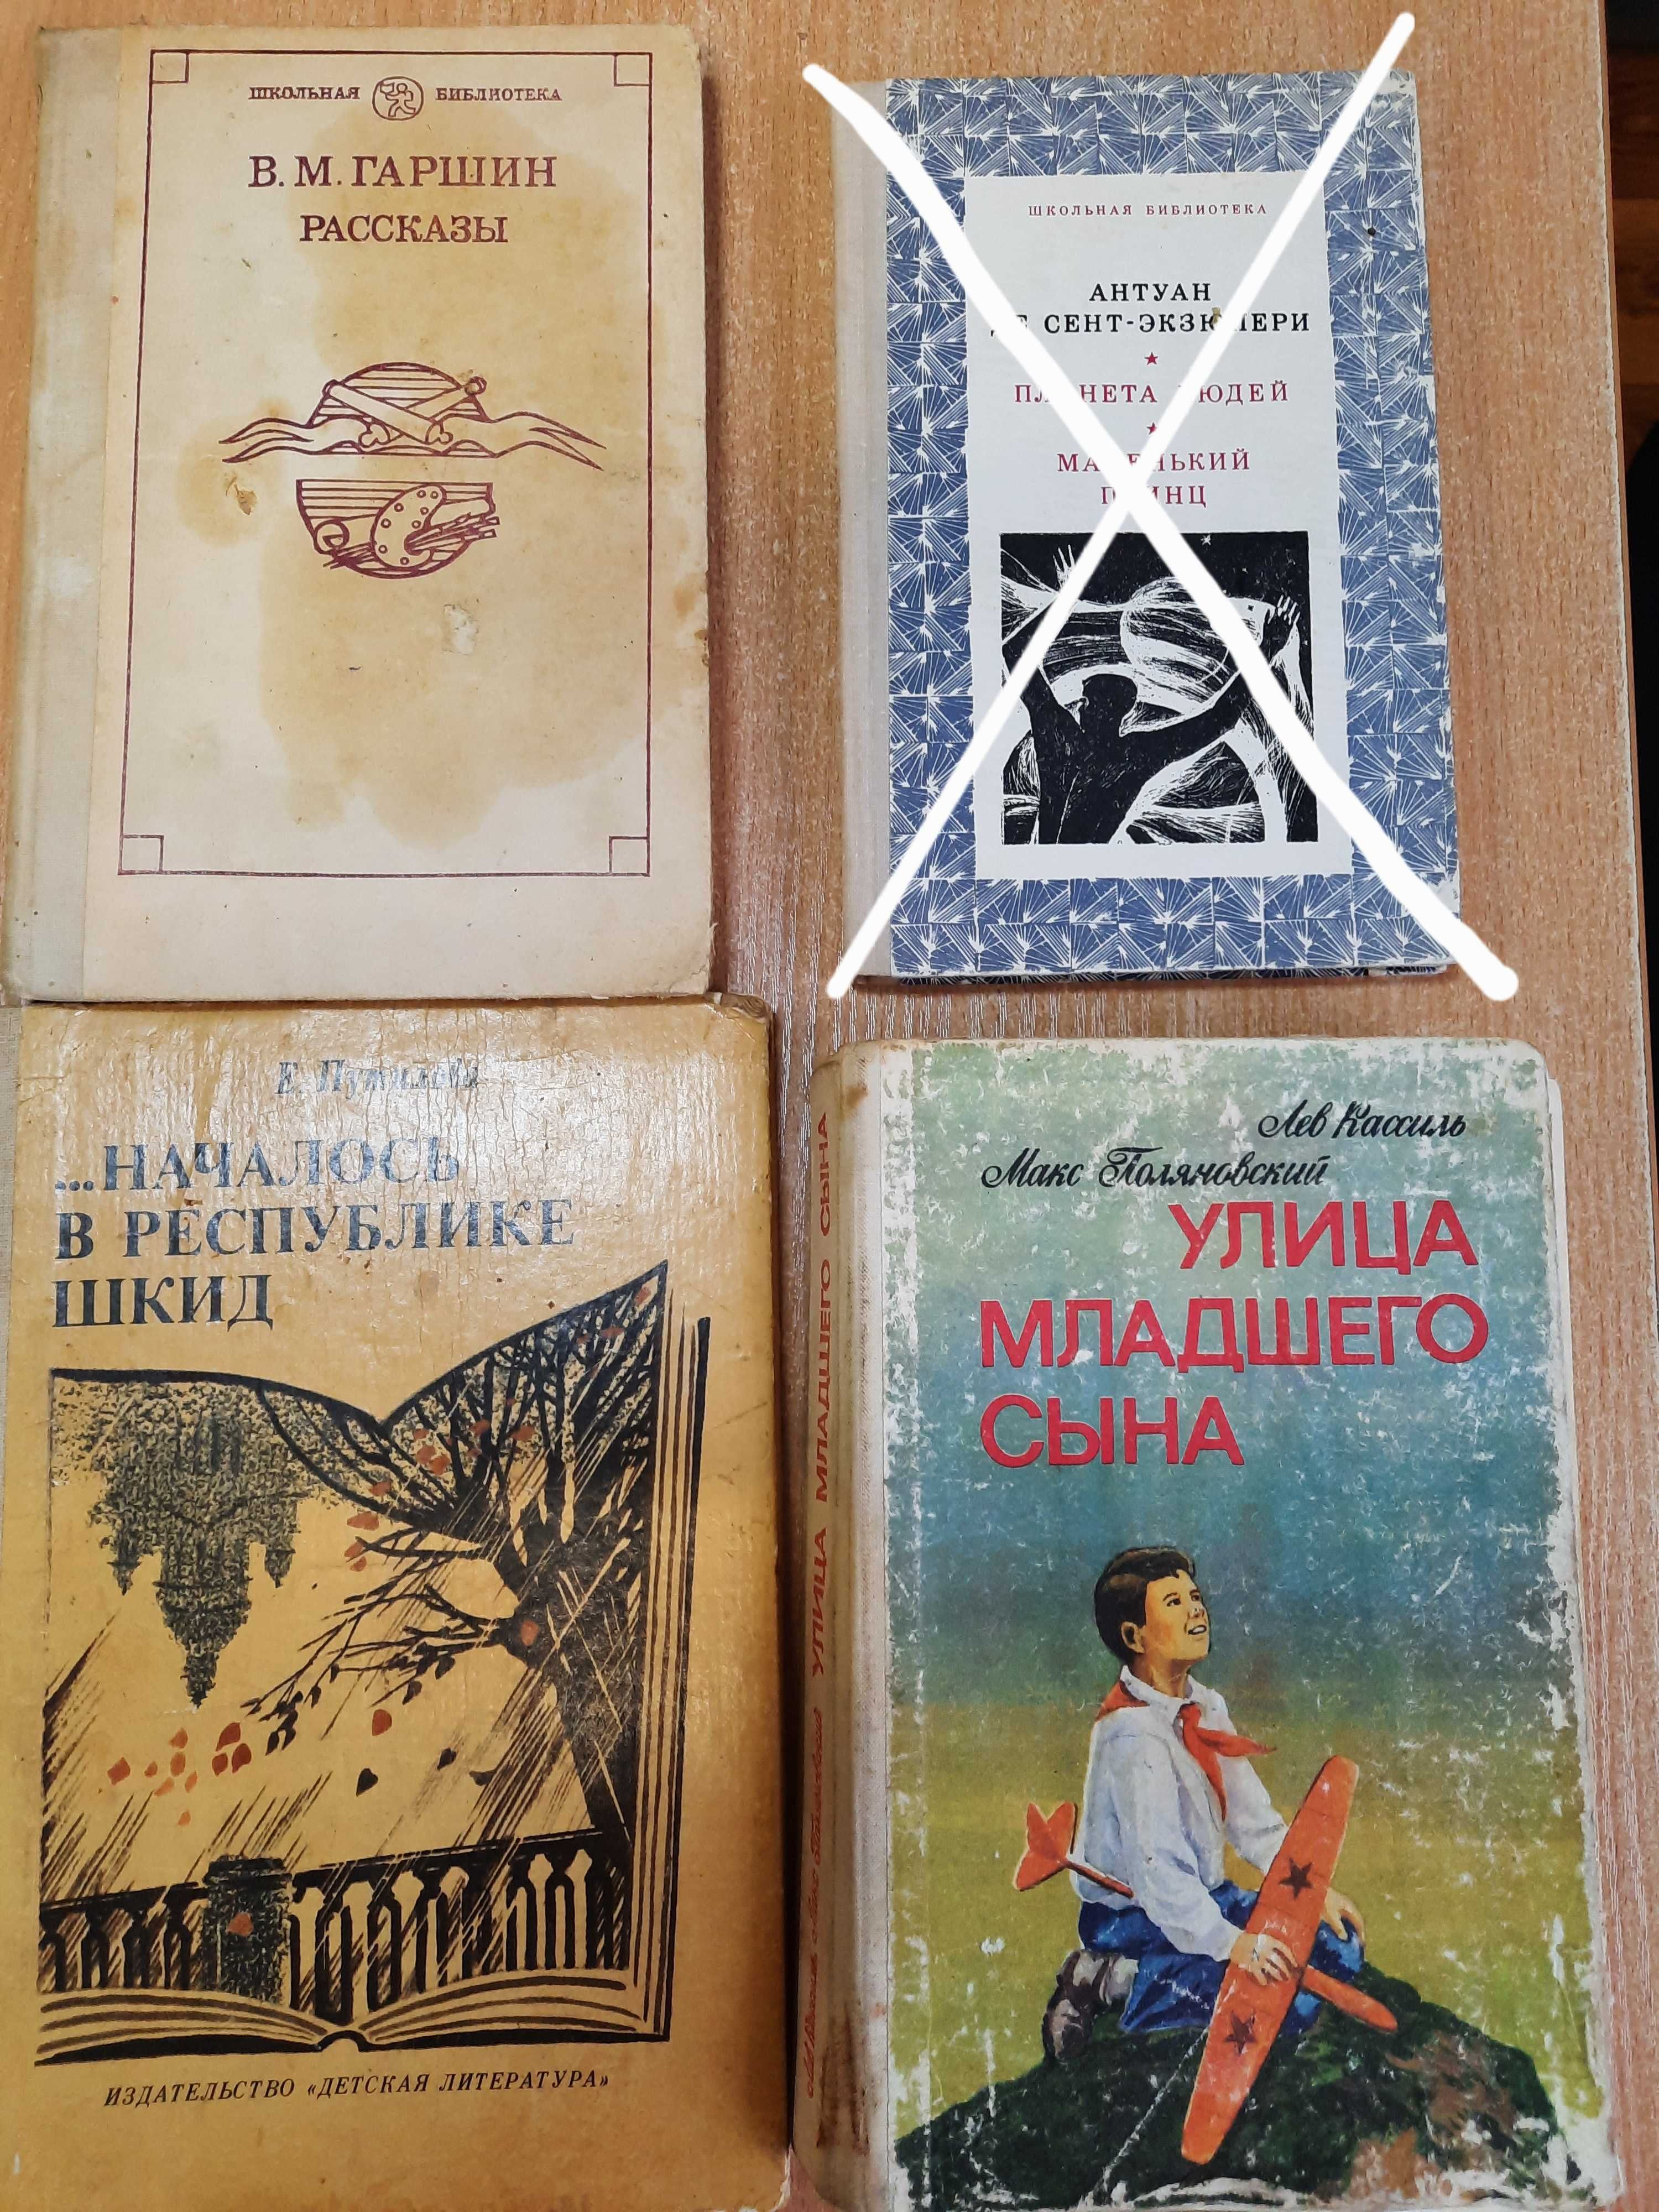 Художественная литература времён СССР